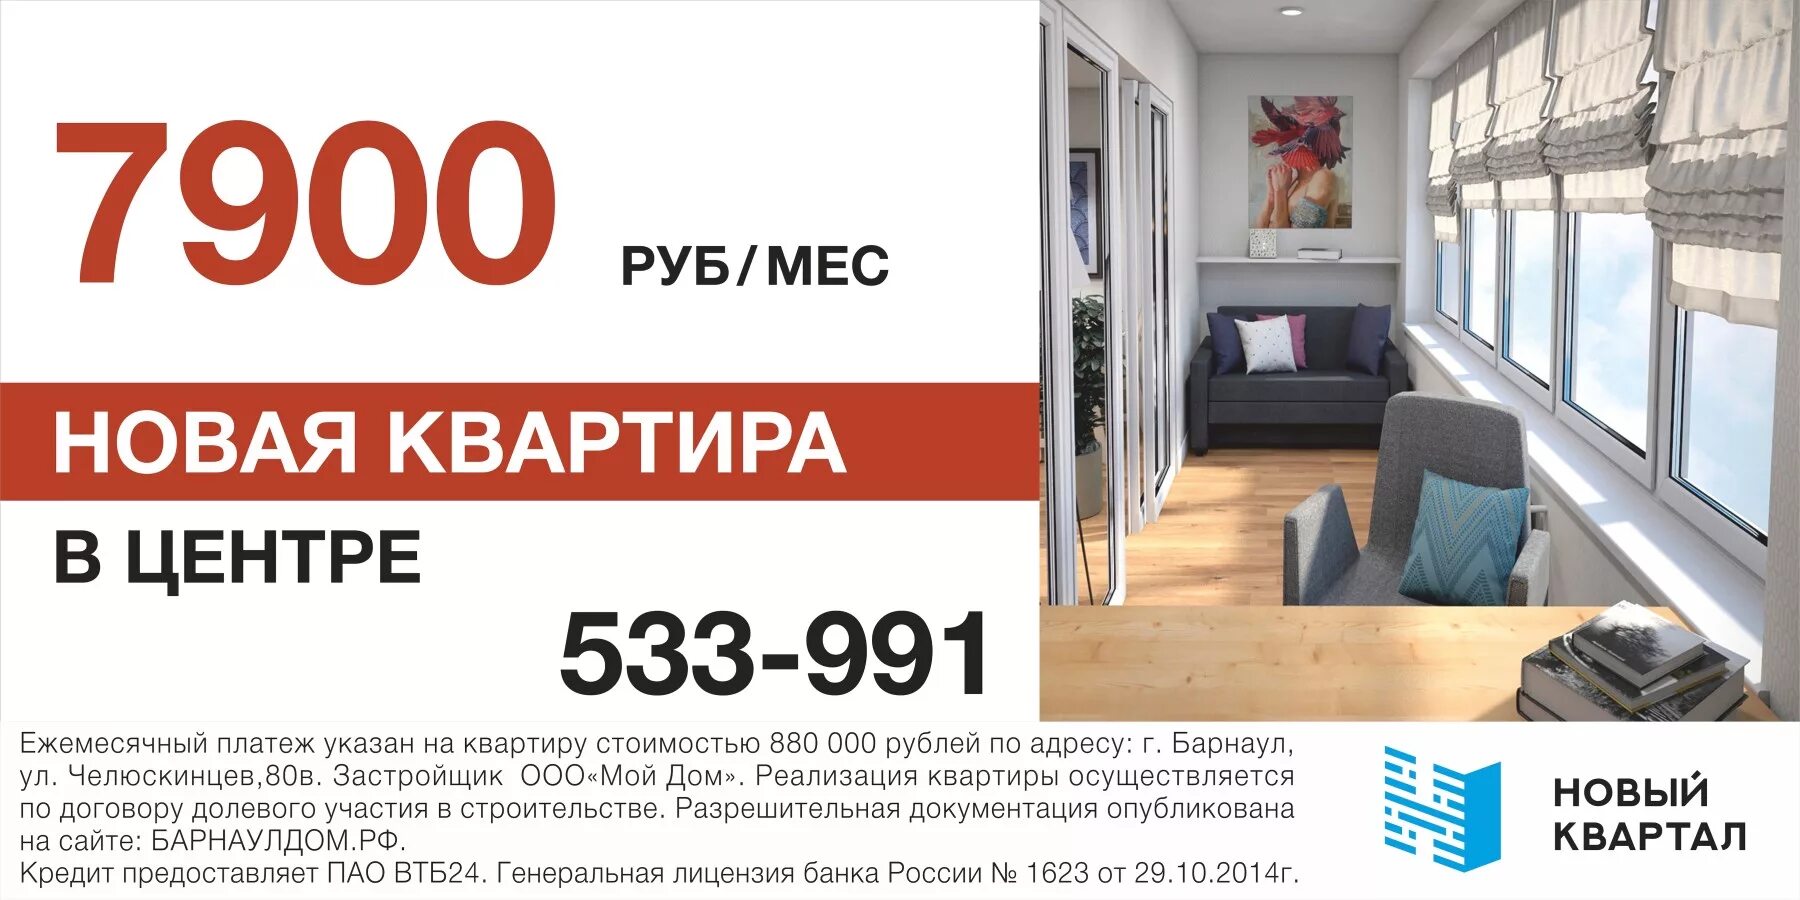 Квартира за 1000 рублей. Квартира за месяц. Ипотека 15000 в месяц. Квартира за 15 тысяч в месяц. Купи квартиру за рублей в месяц.